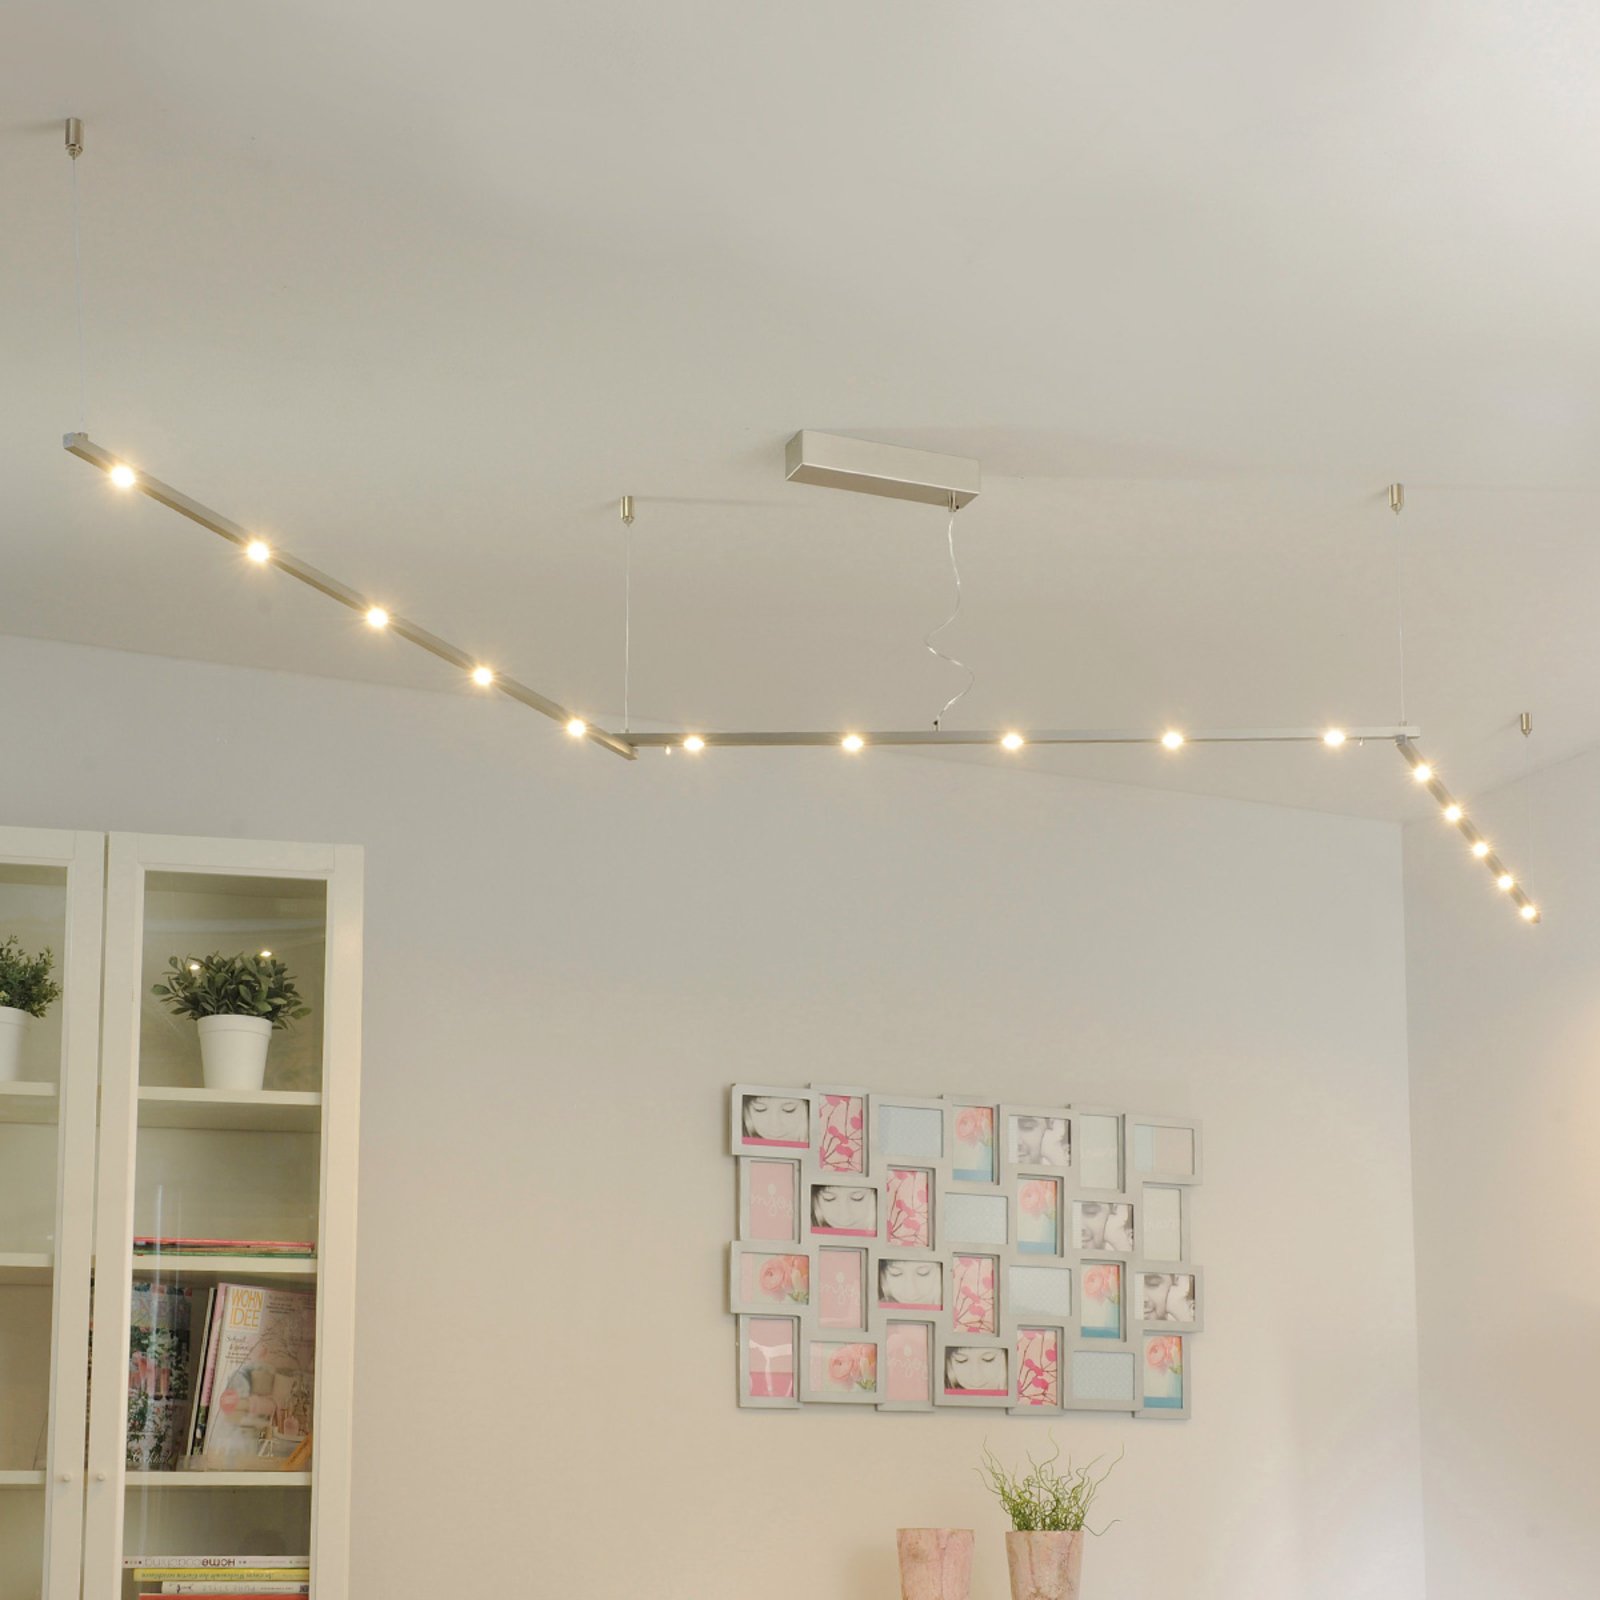 5 000 lm - système LED flexible pour plafond Elta